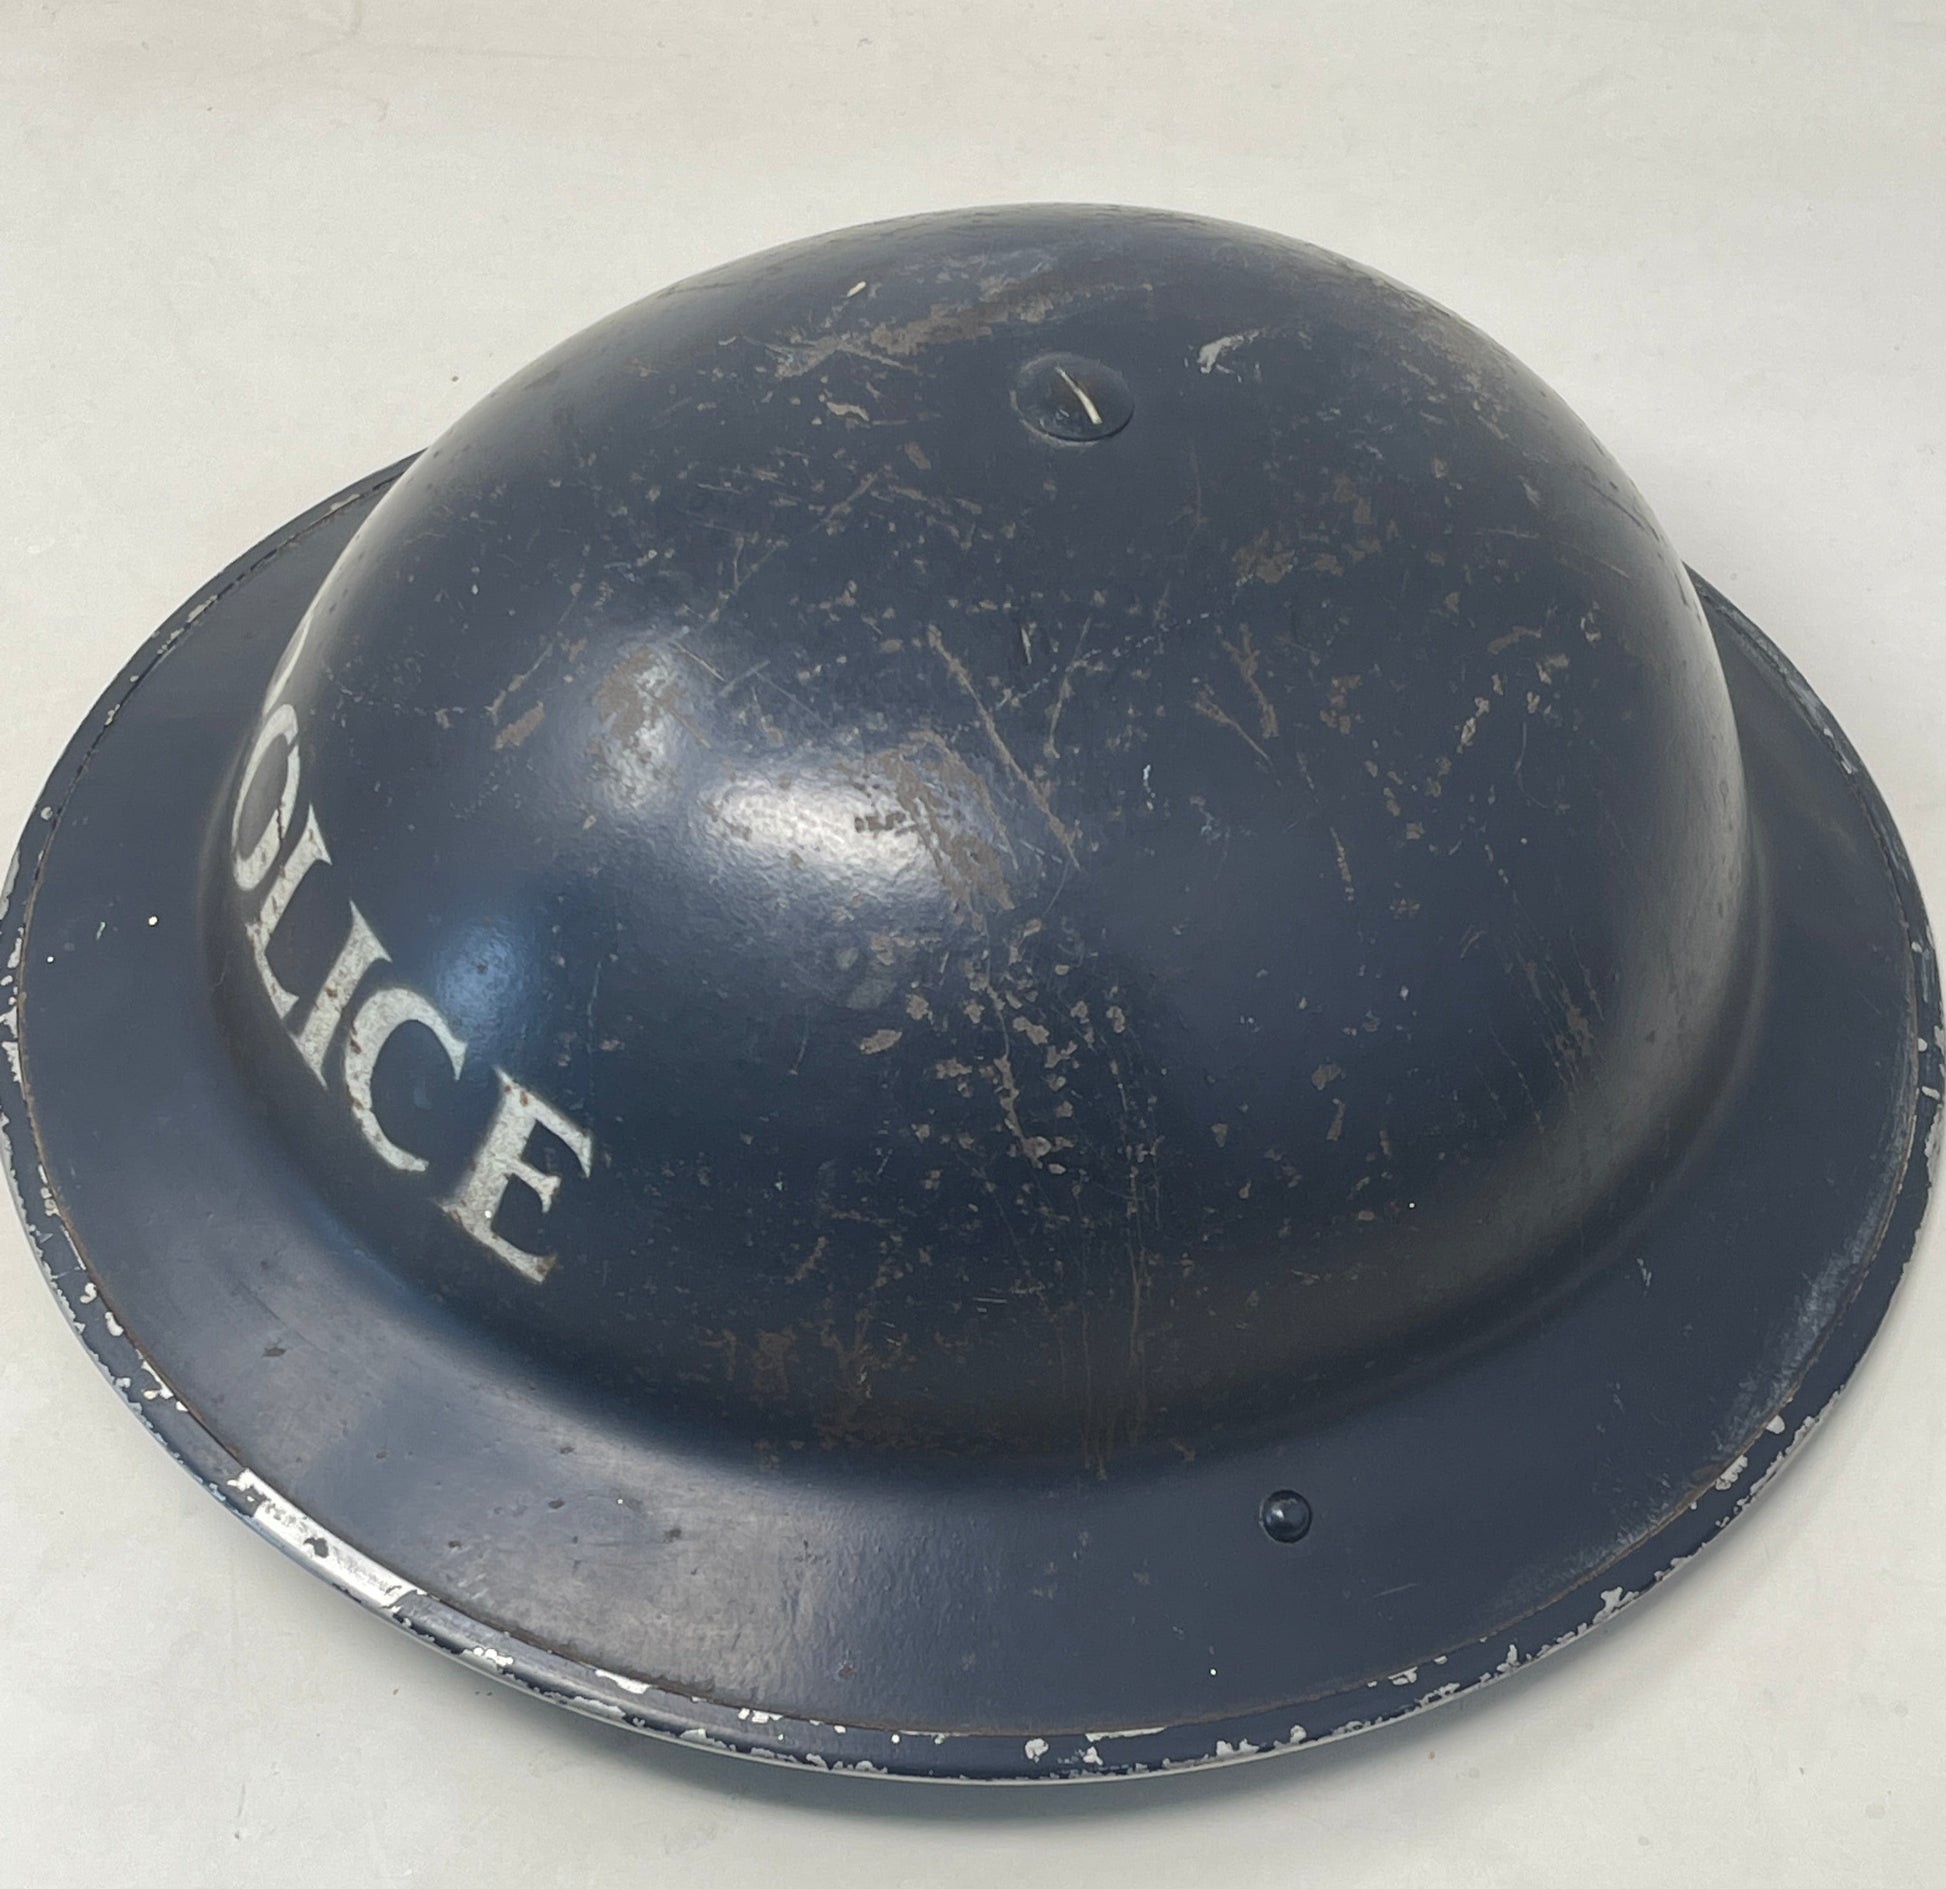 British WW2 Police Officers Steel Helmet